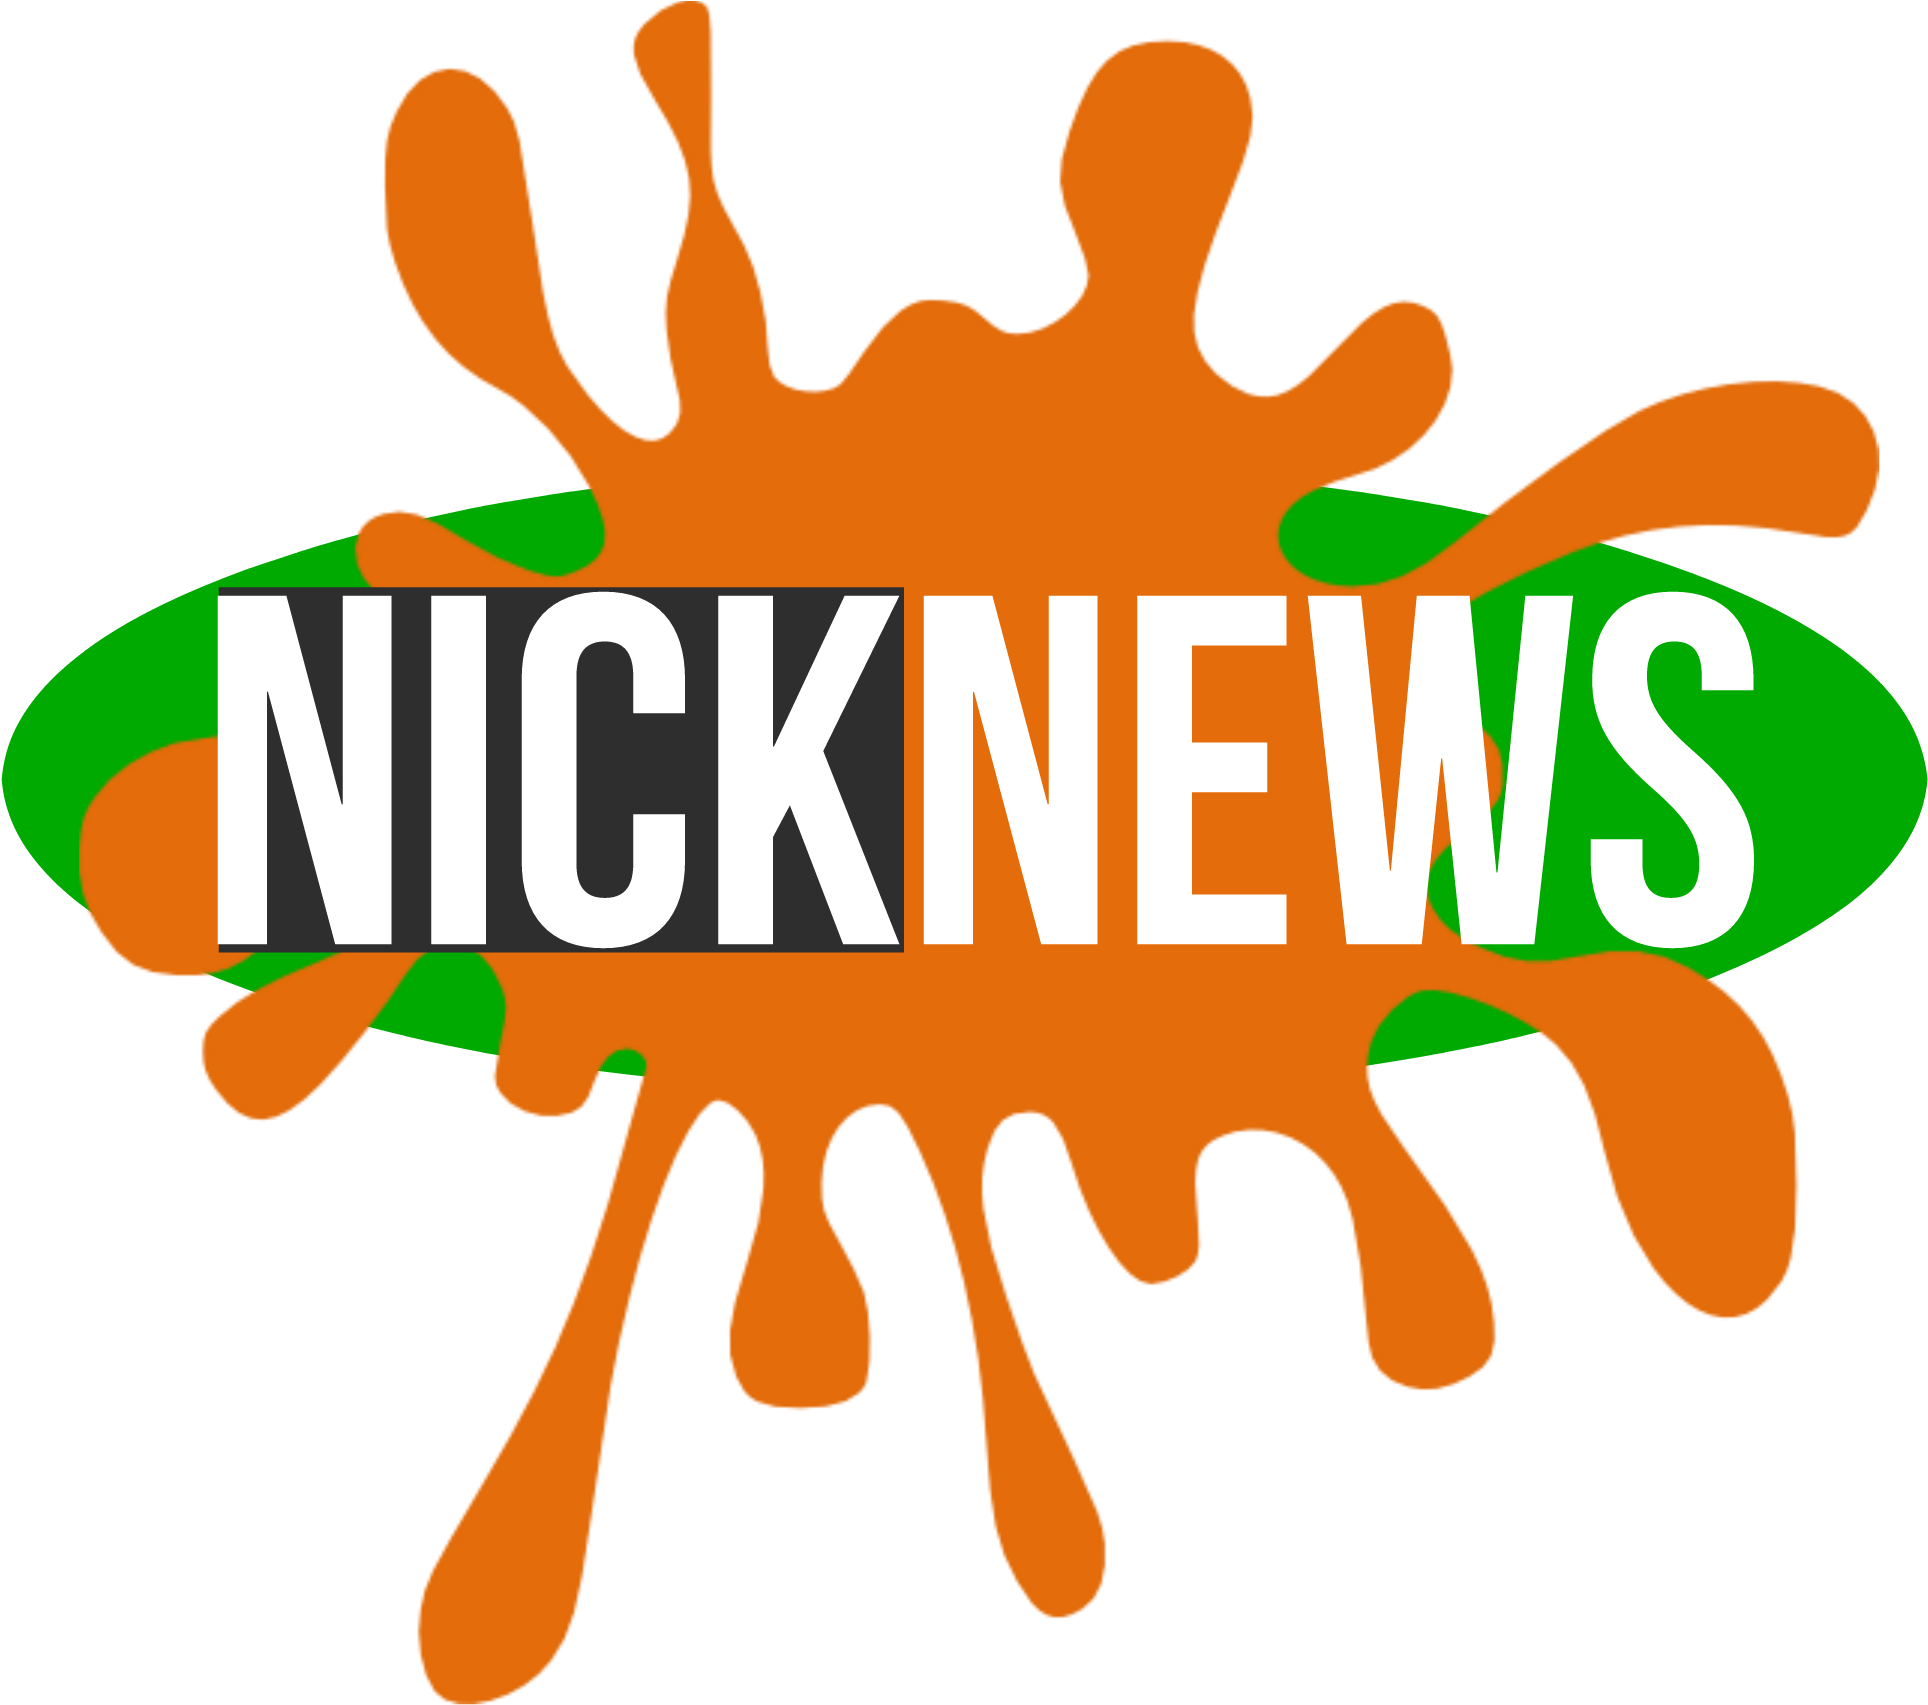 Post Nickelodeon 25th Anniversary Nicknews - Post Nickelodeon 25th Anniversary Nicknews (1928x1705)